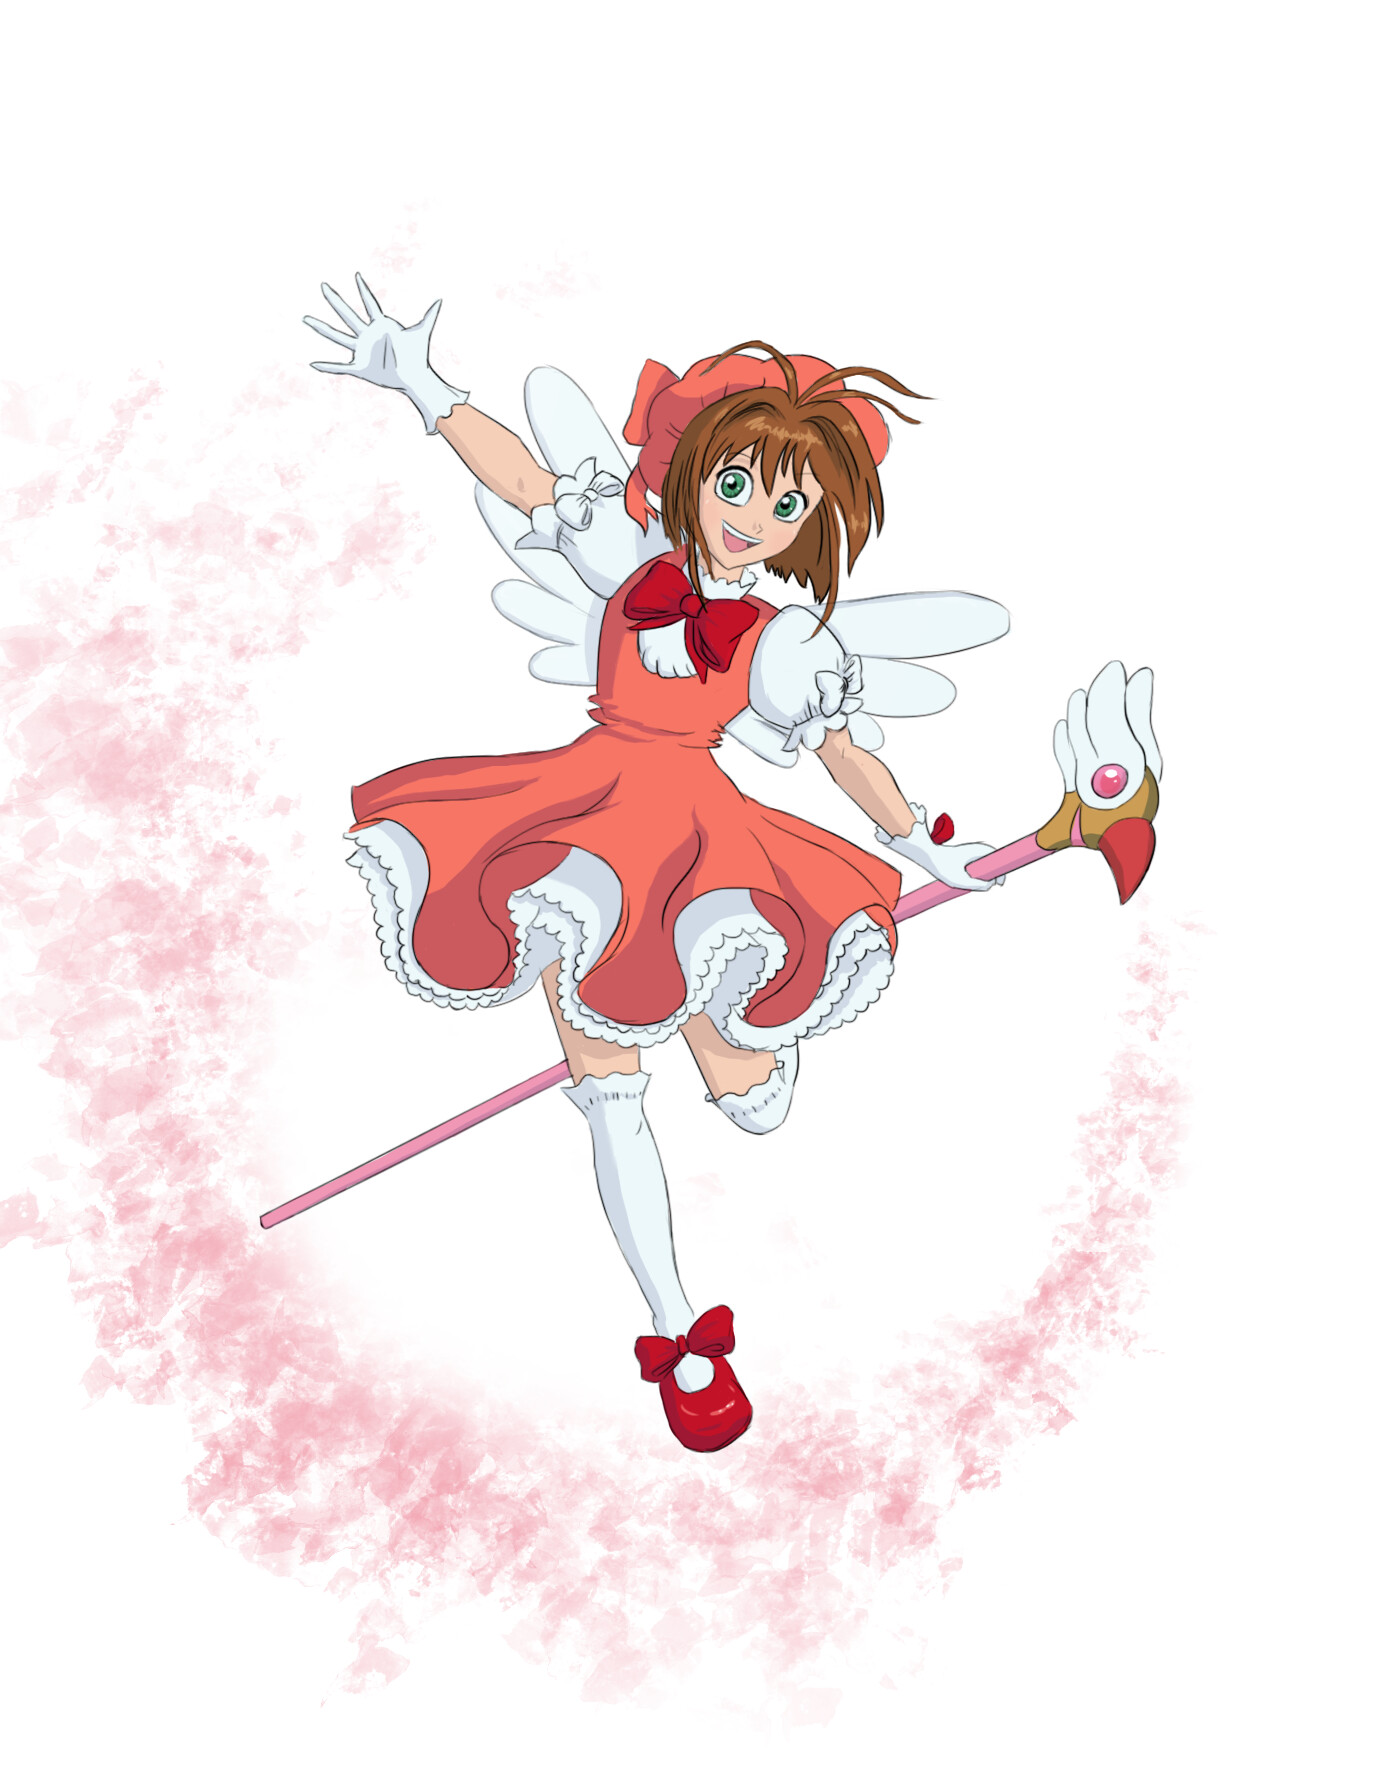 ArtStation - Fan art: Cardcaptor Sakura